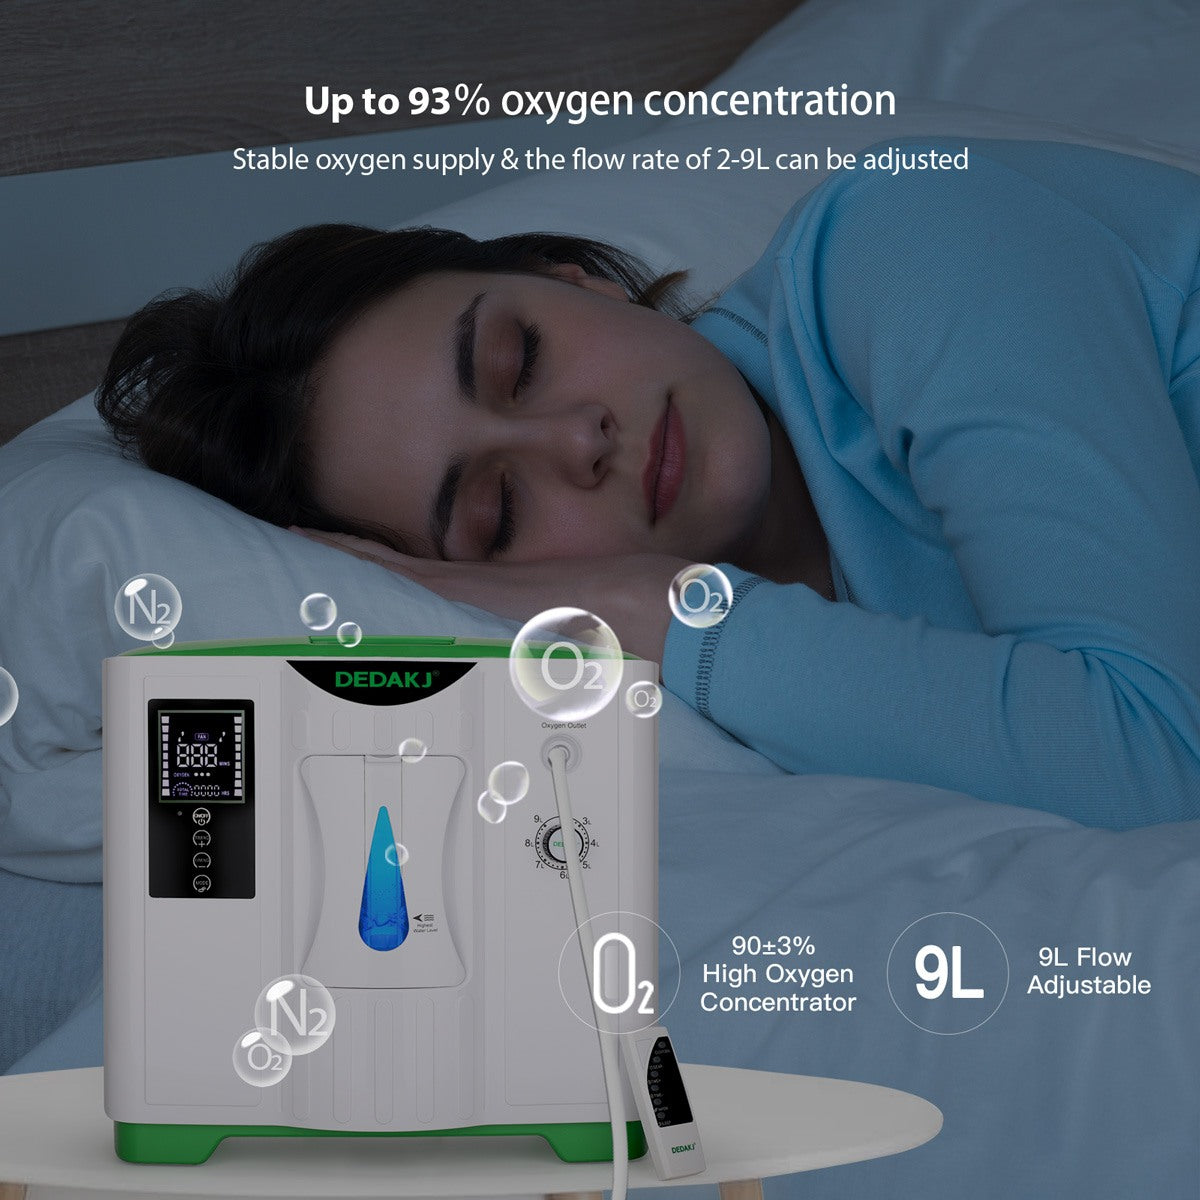 DEDAKJ 9 liter continuous flow home oxygen concentrator DE-2A